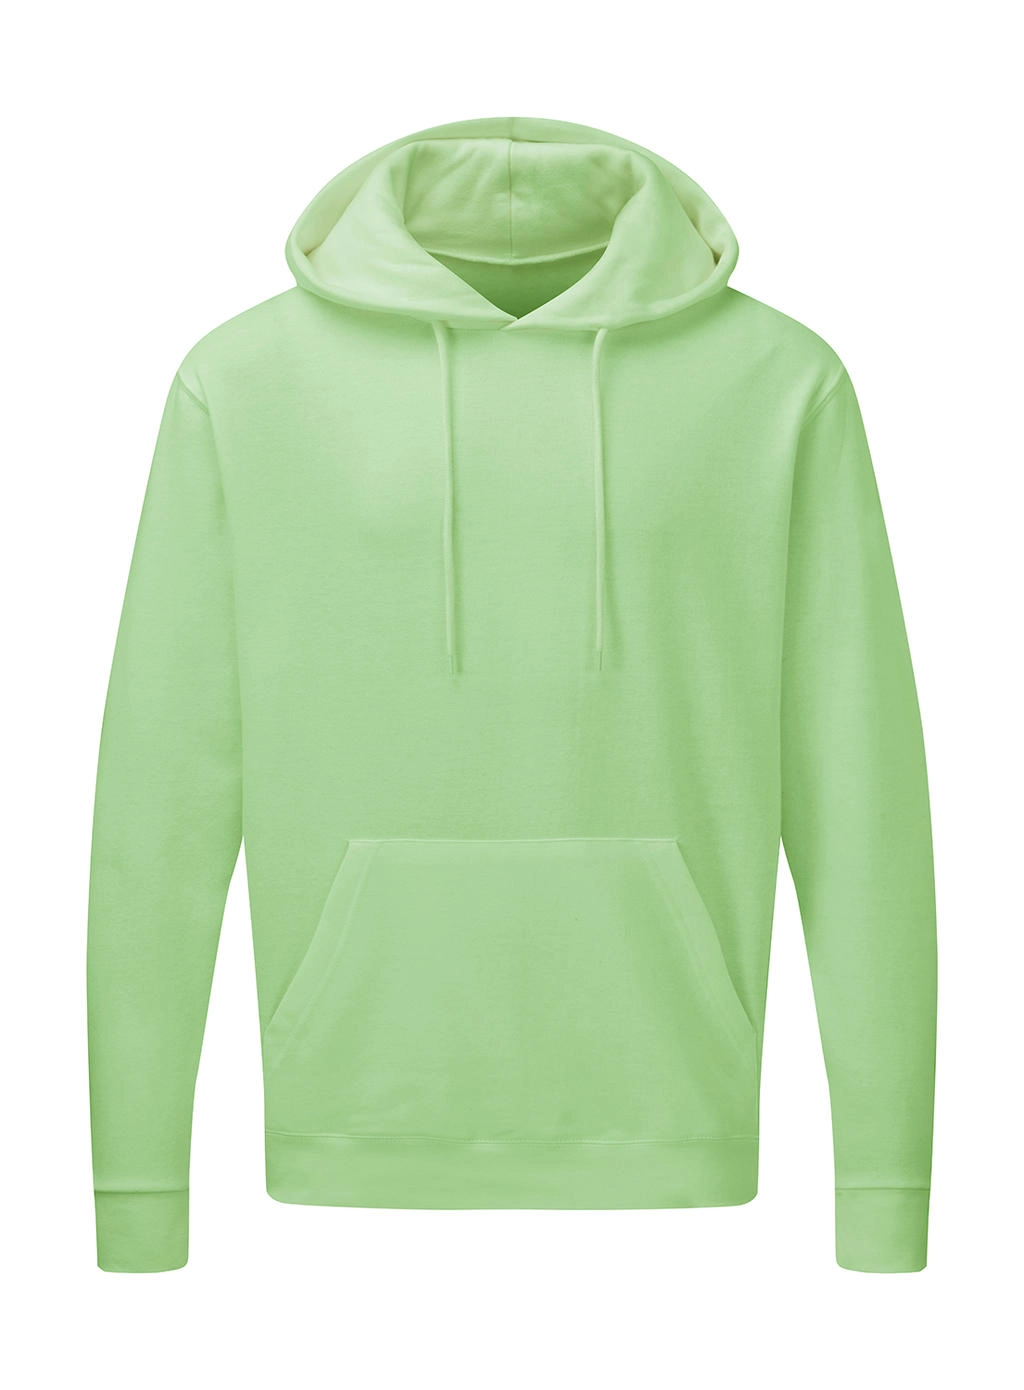 Hooded Sweatshirt Men zum Besticken und Bedrucken in der Farbe Neo Mint mit Ihren Logo, Schriftzug oder Motiv.